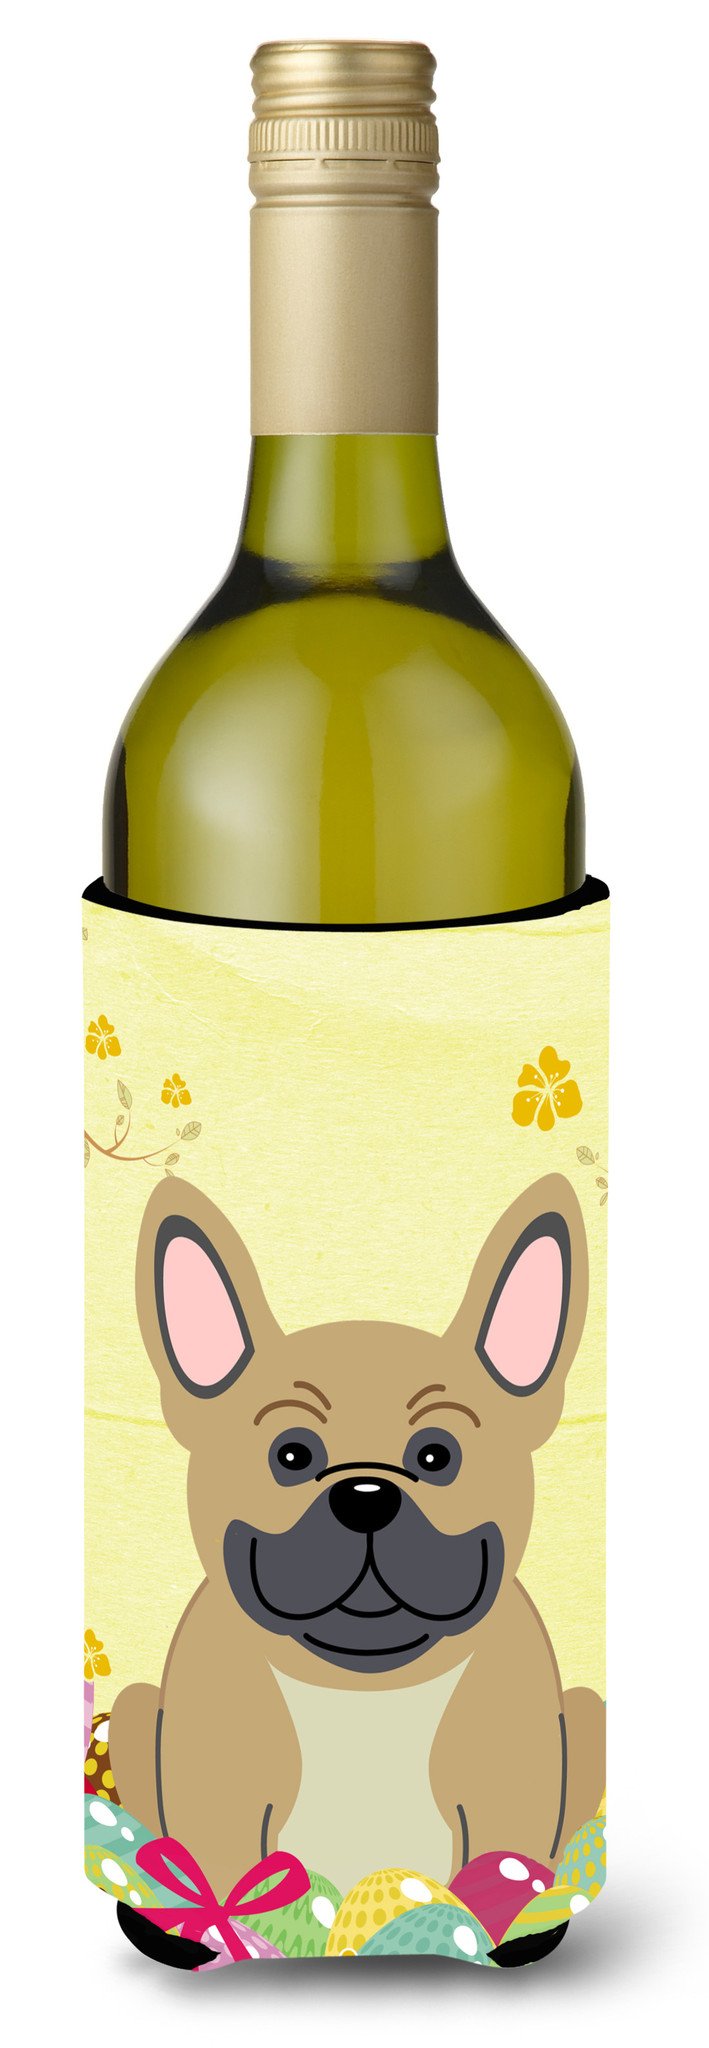 Easter Eggs French Bulldog Cream Wine Bottle Beverge Insulator Hugger BB6010LITERK by Caroline's Treasures